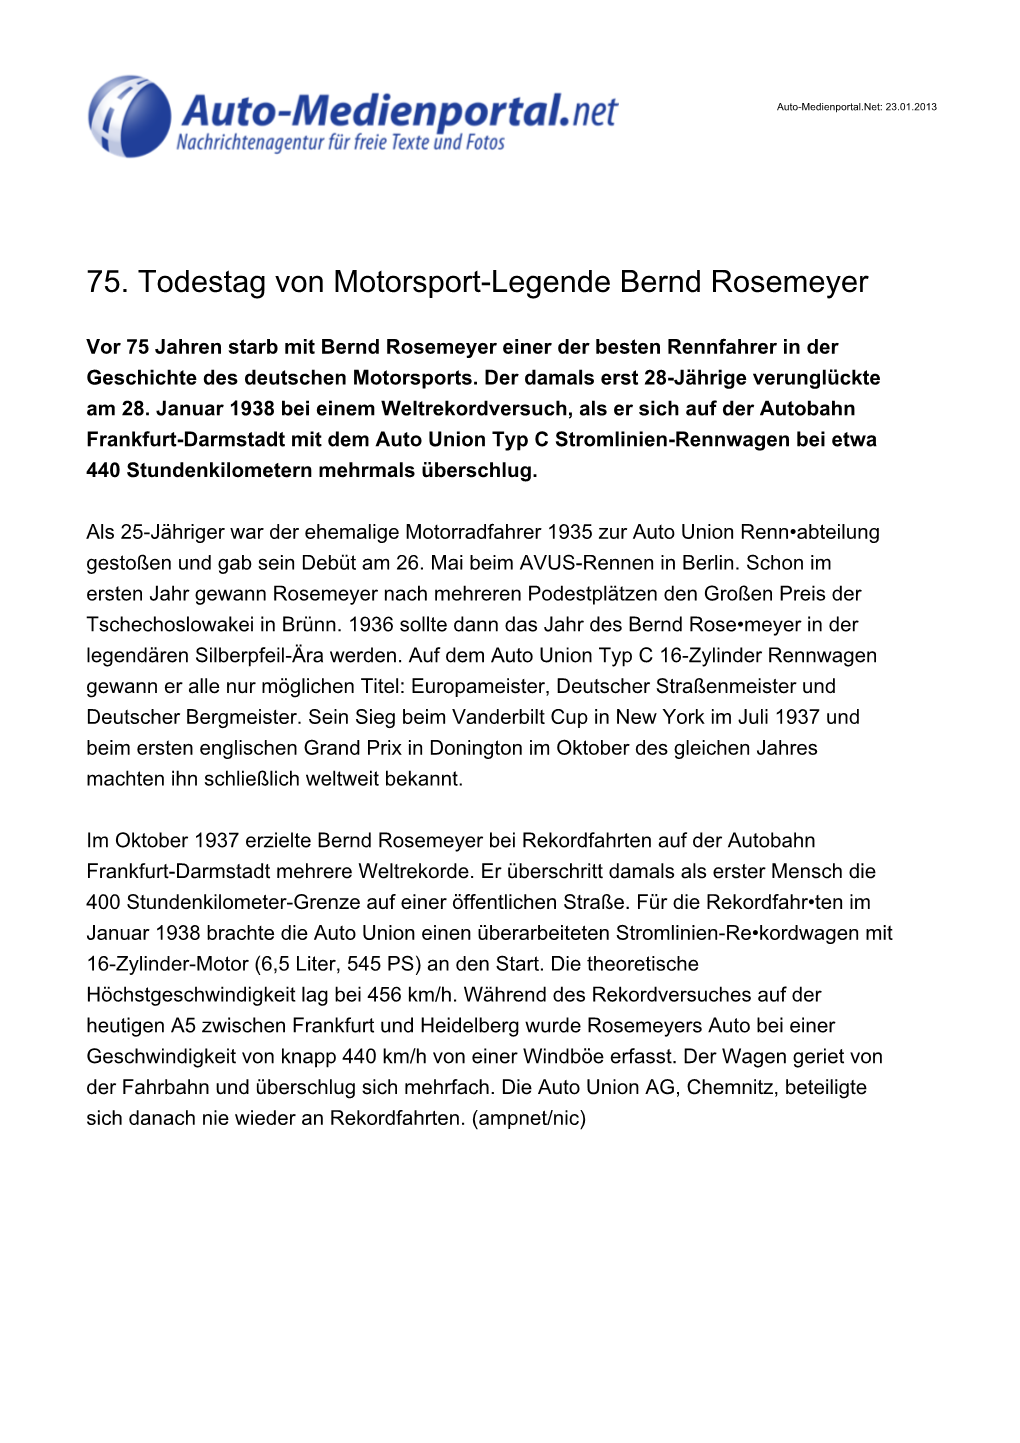 75. Todestag Von Motorsport-Legende Bernd Rosemeyer